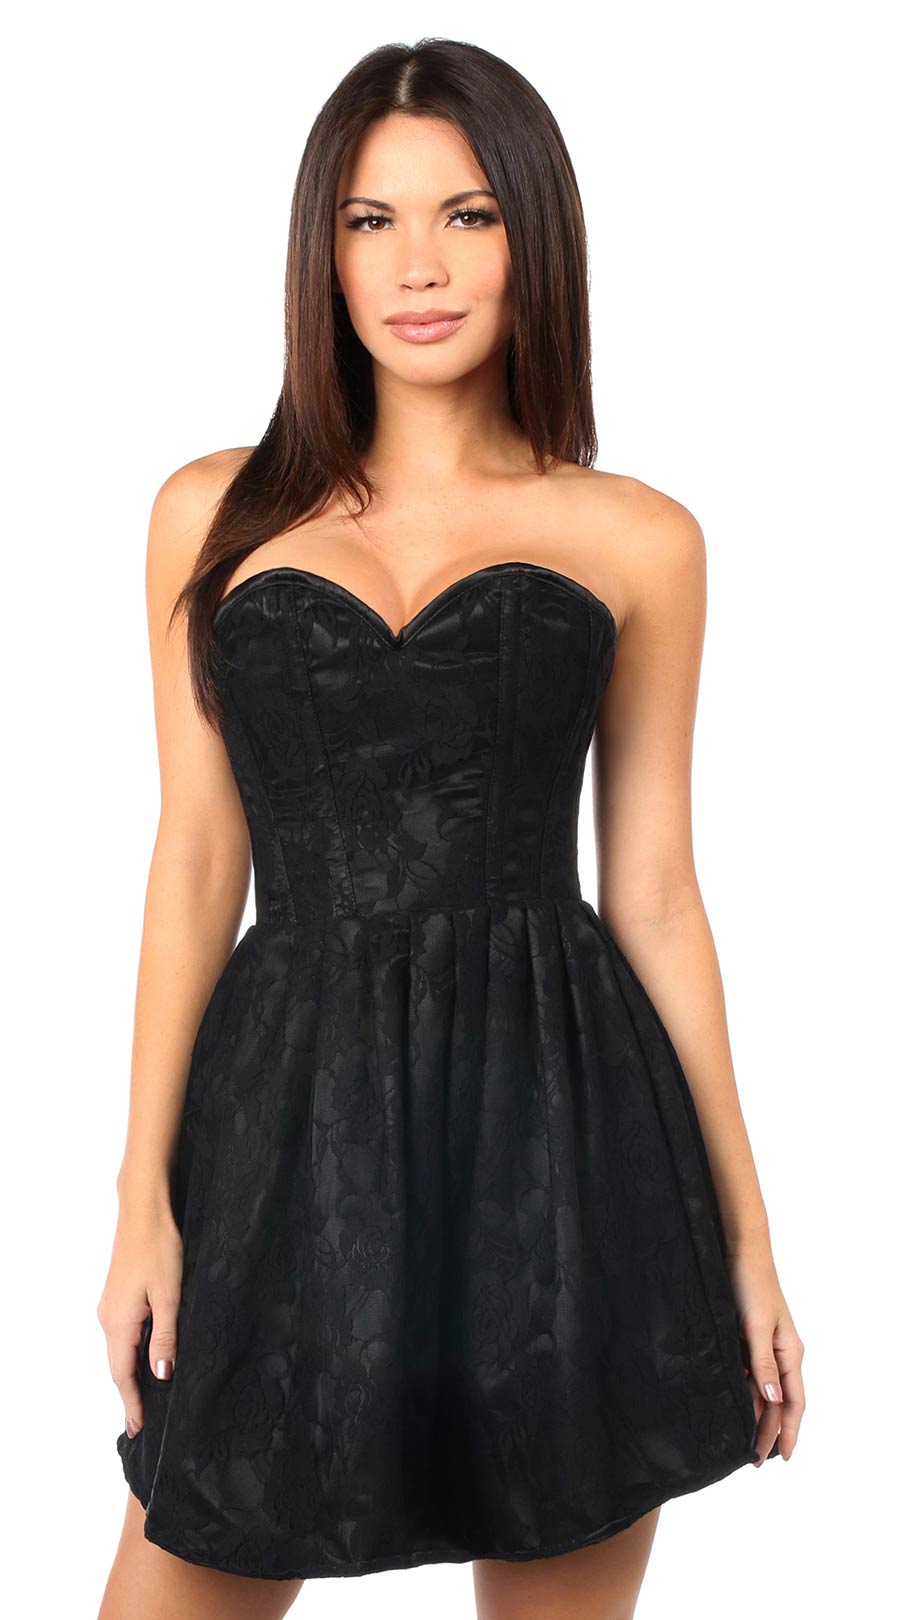 Steel Boned Lace Empire Waist Corset Dress in Black 🖤